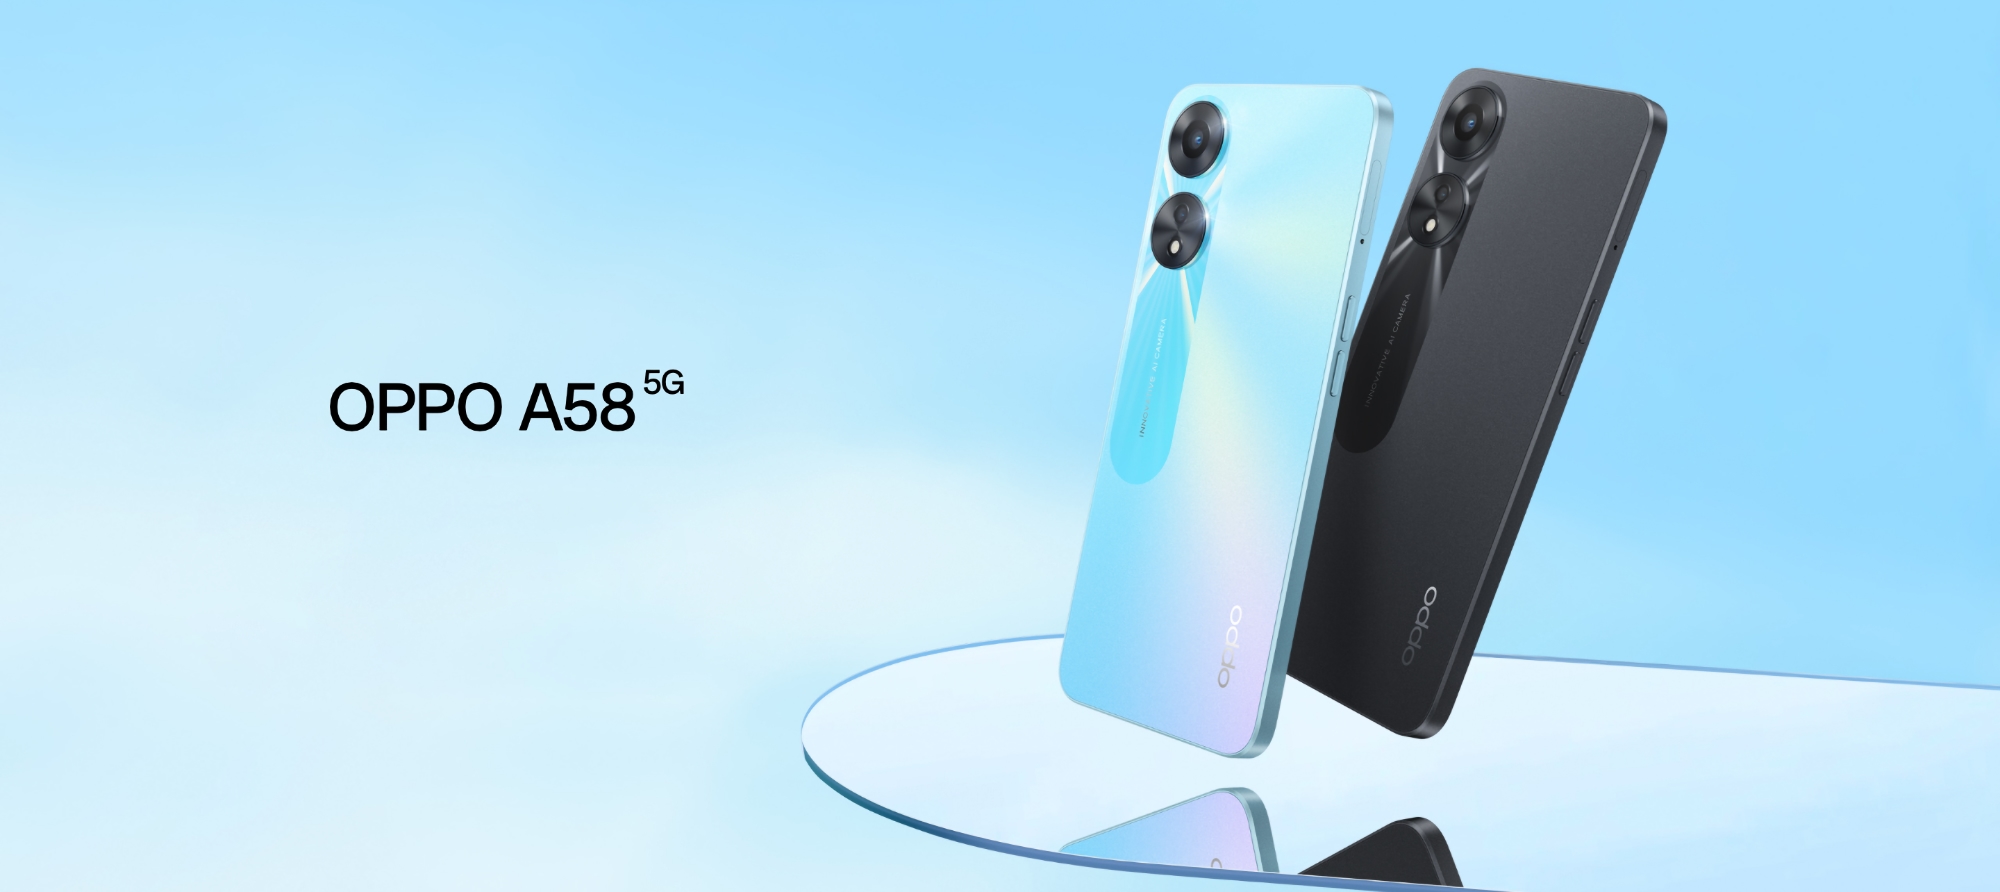 OPPO A58 5G : écran 90 Hz, puce MediaTek Dimensity 700, haut-parleurs stéréo et charge rapide de 33 W pour 234 $.